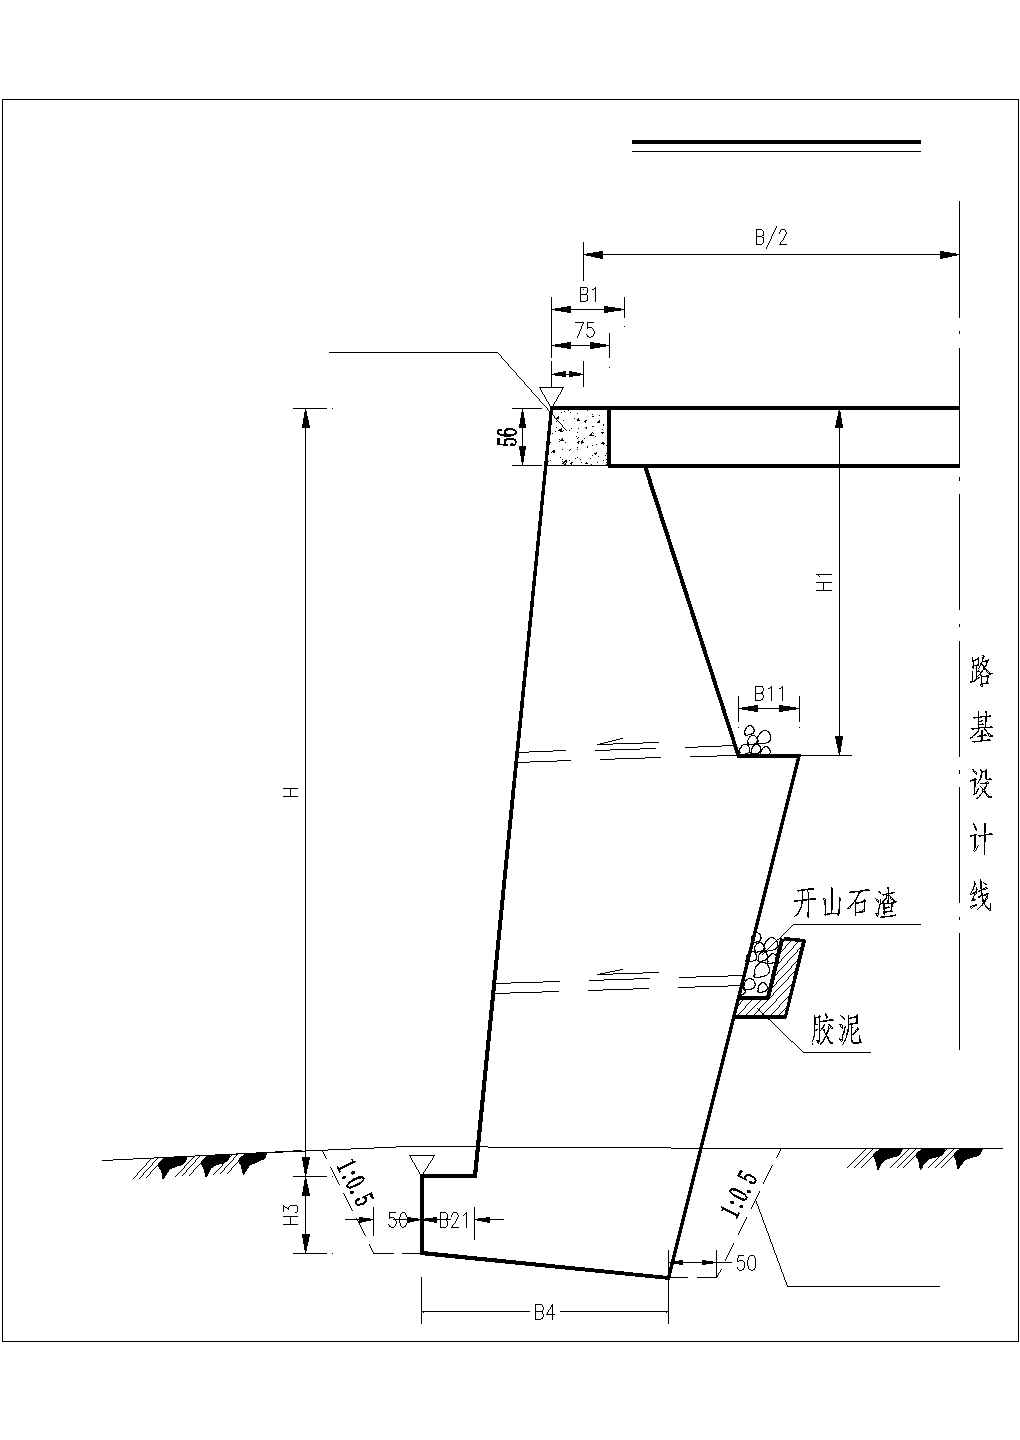 路基防护工程衡重式路肩墙结构设计图纸